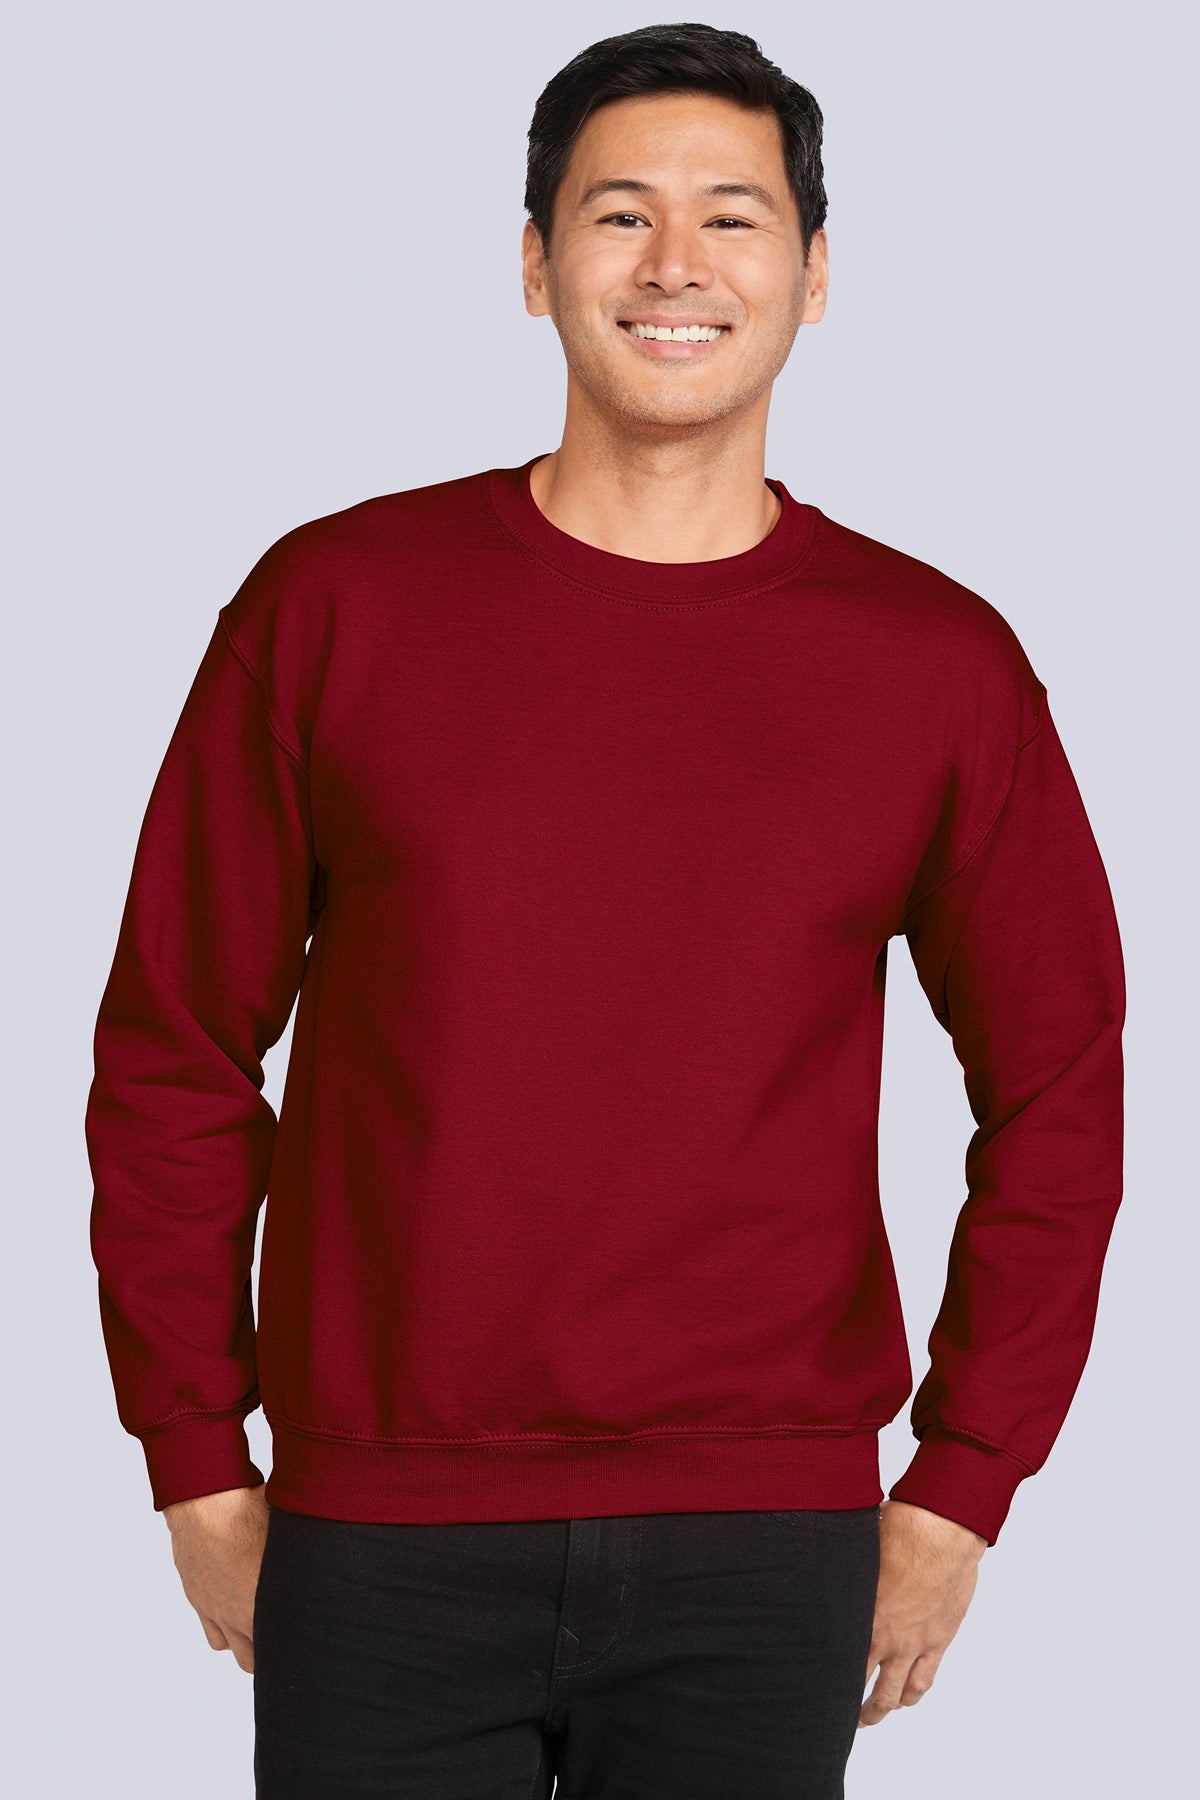 Custom Printed Sweatshirts (Unisex)